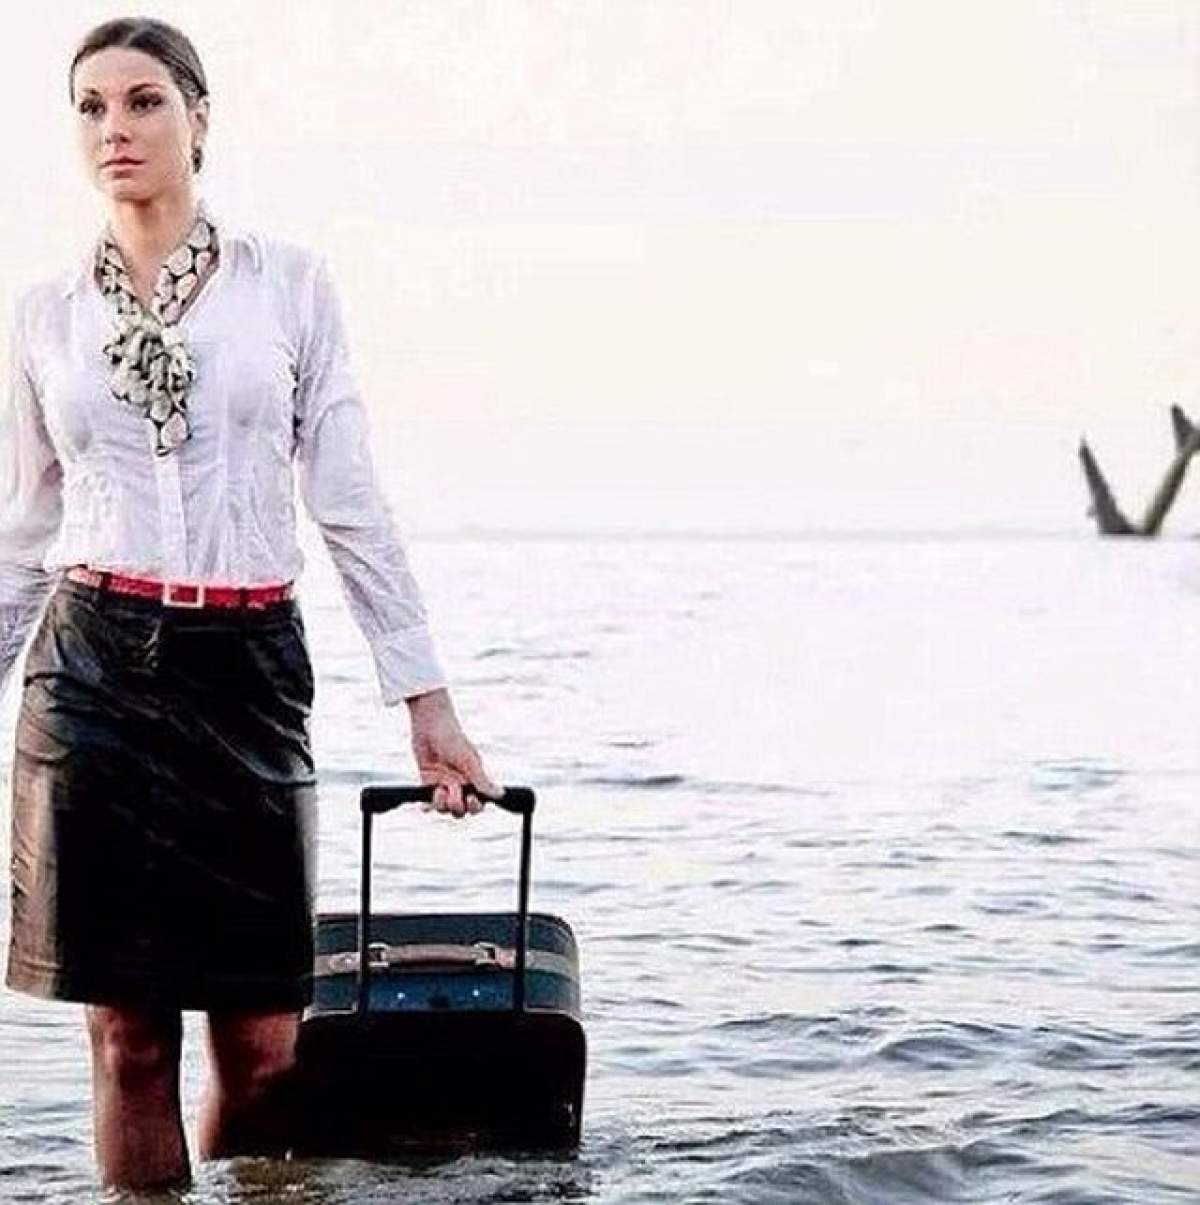 Premoniţie sau coincidenţă? Fotografia postată de o stewardesă de la bordul avionului EgyptAir, înainte de tragedie